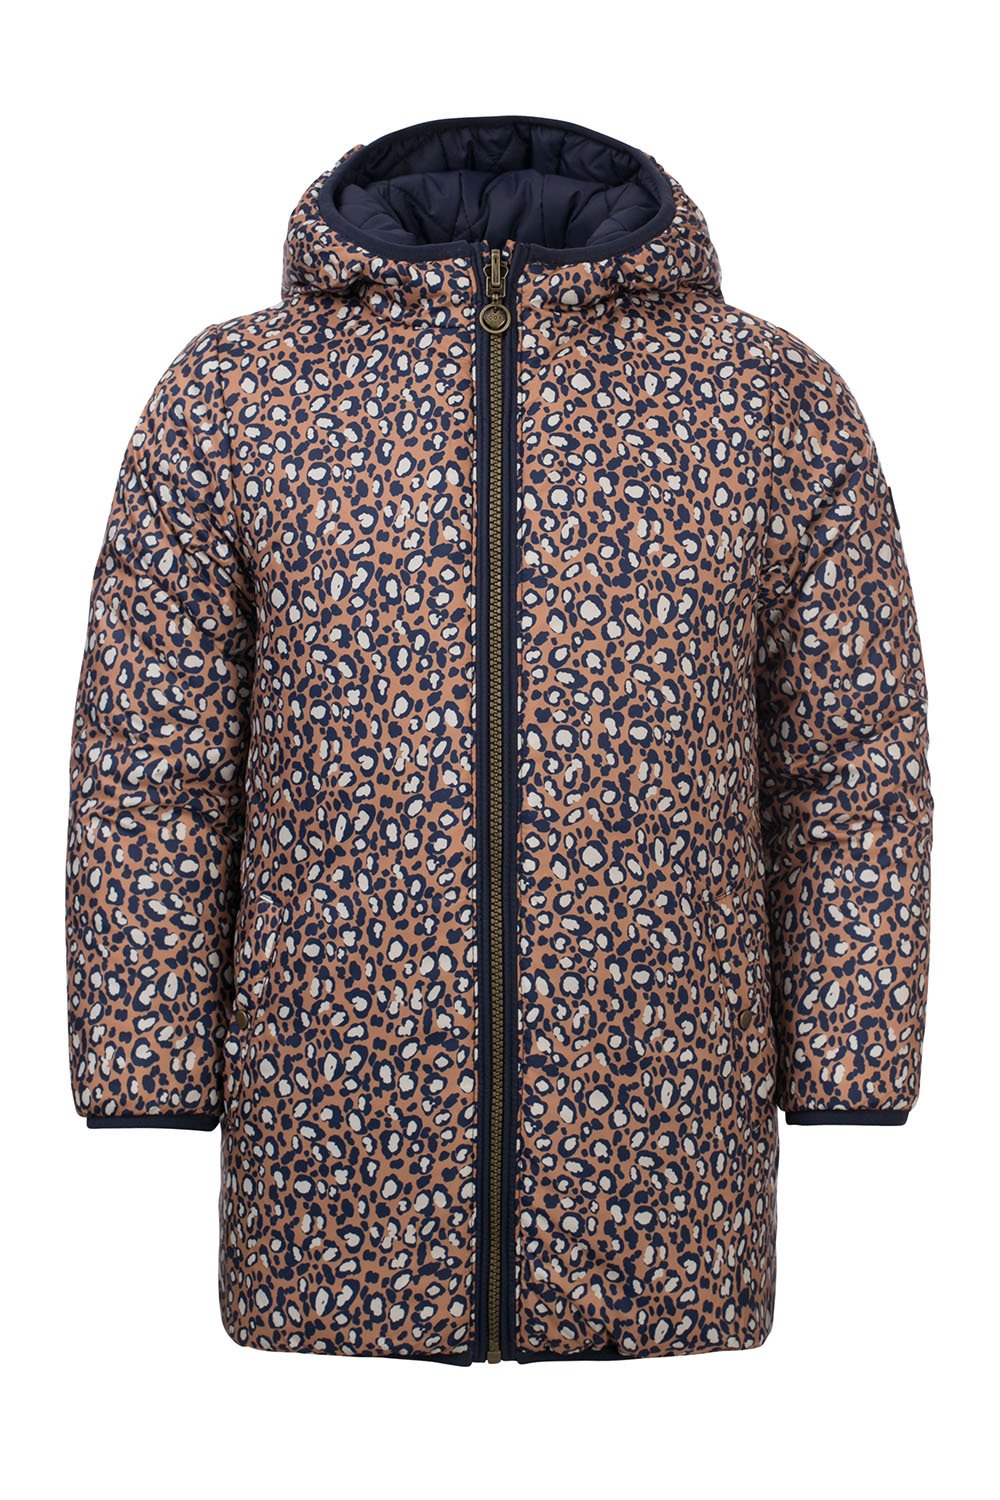 Meisjes Little jacket leopard reversible van LOOXS Little in de kleur navy in maat 128.